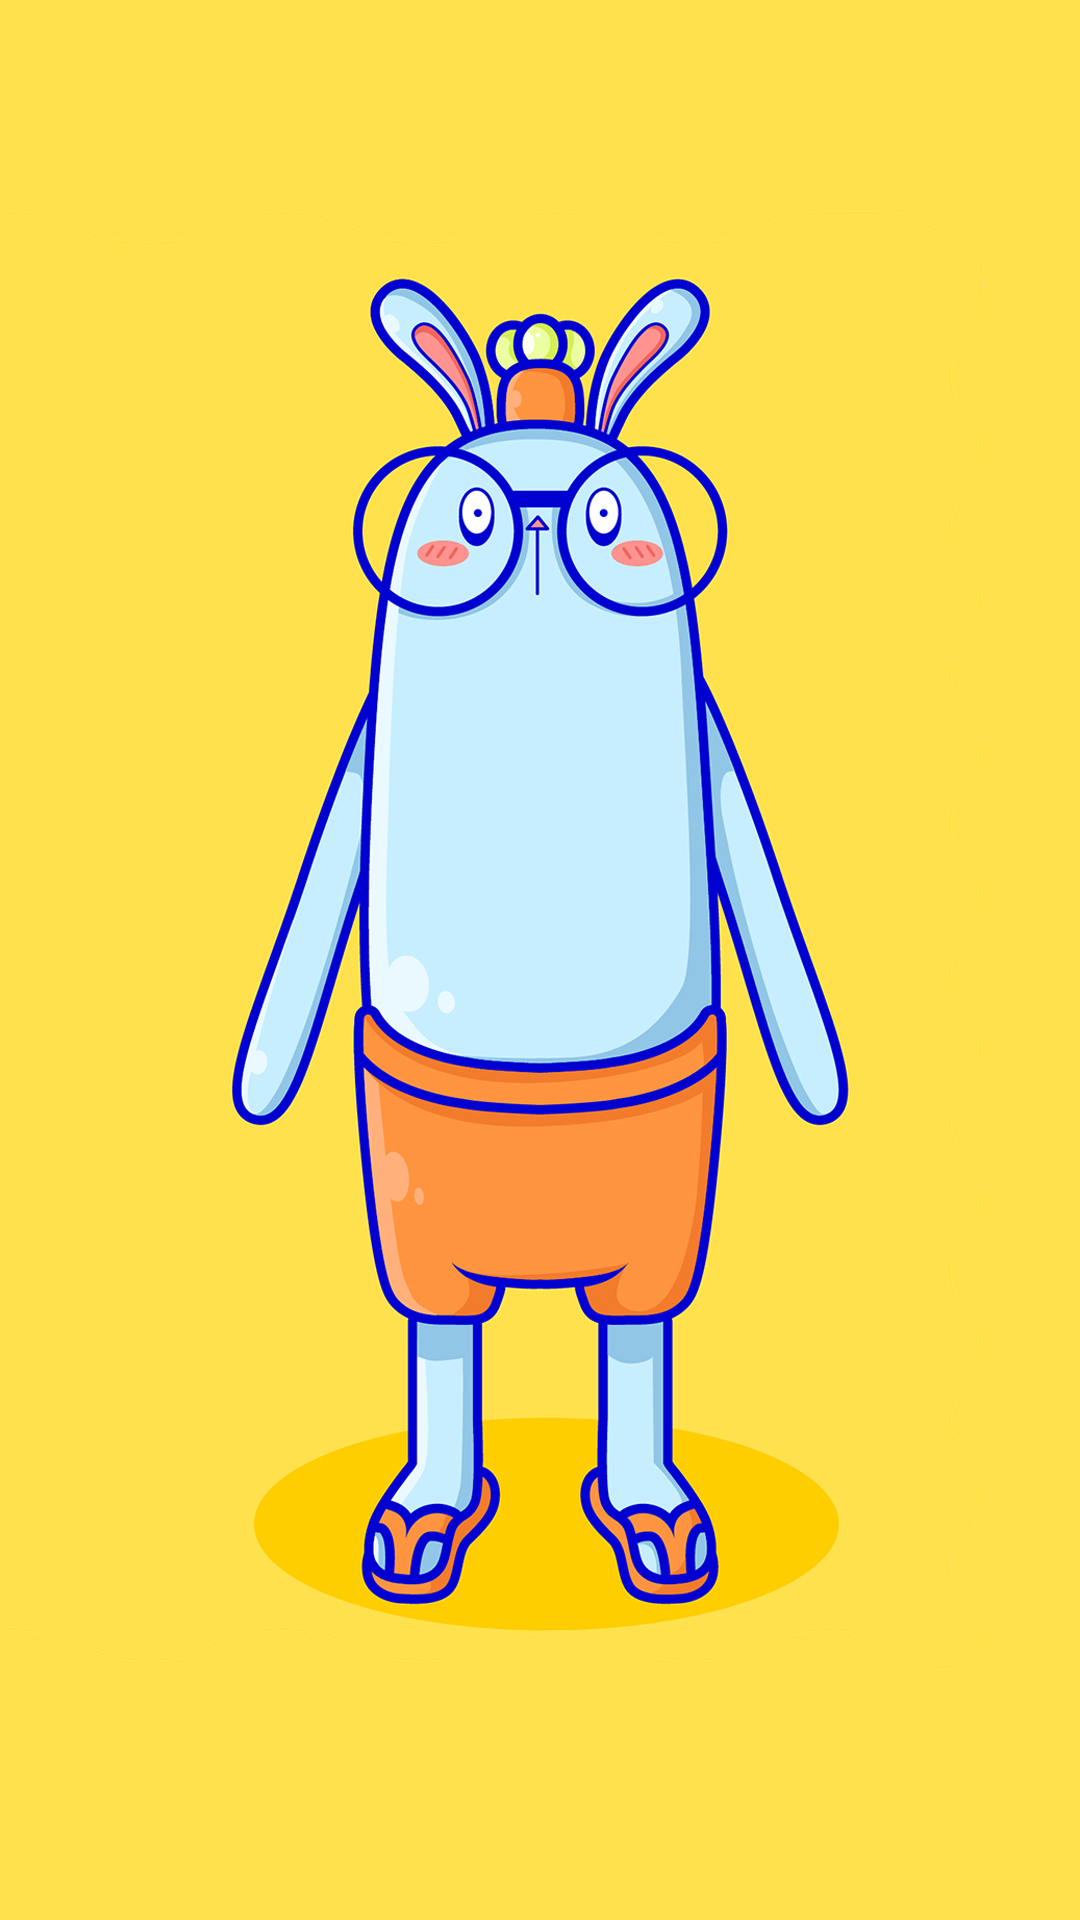 第九工场吉祥物-耐斯兔-蓝-插画表情包-第九工场设计外包